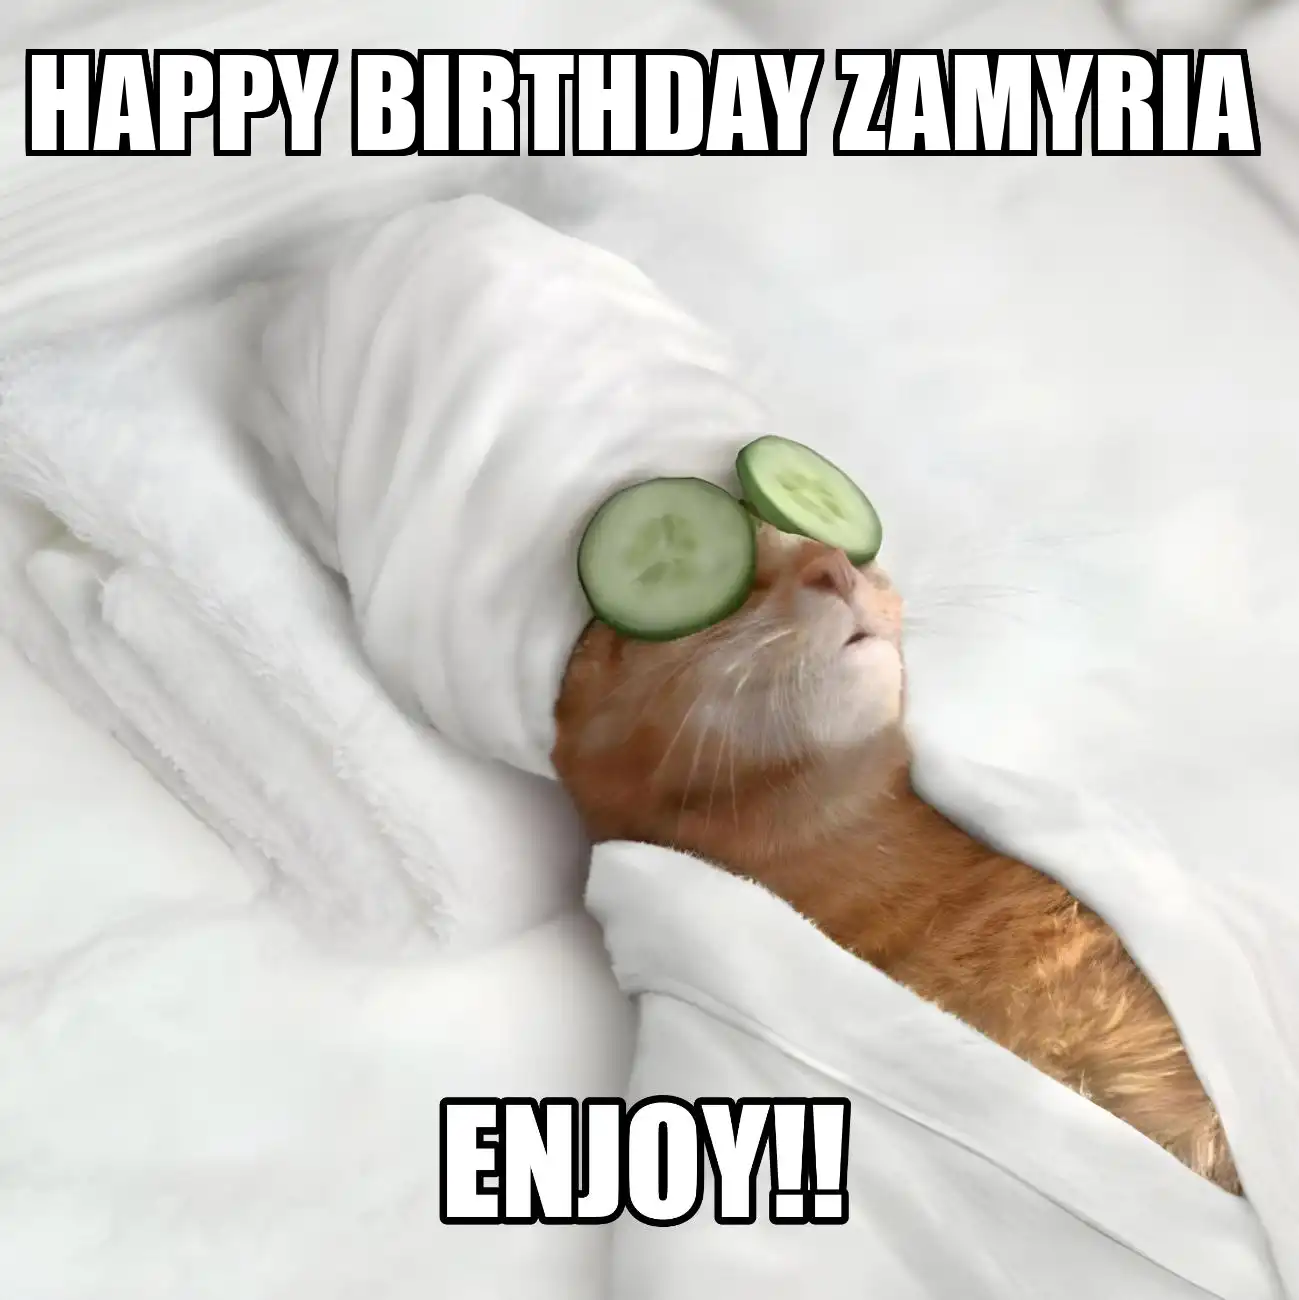 Happy Birthday Zamyria Enjoy Cat Meme